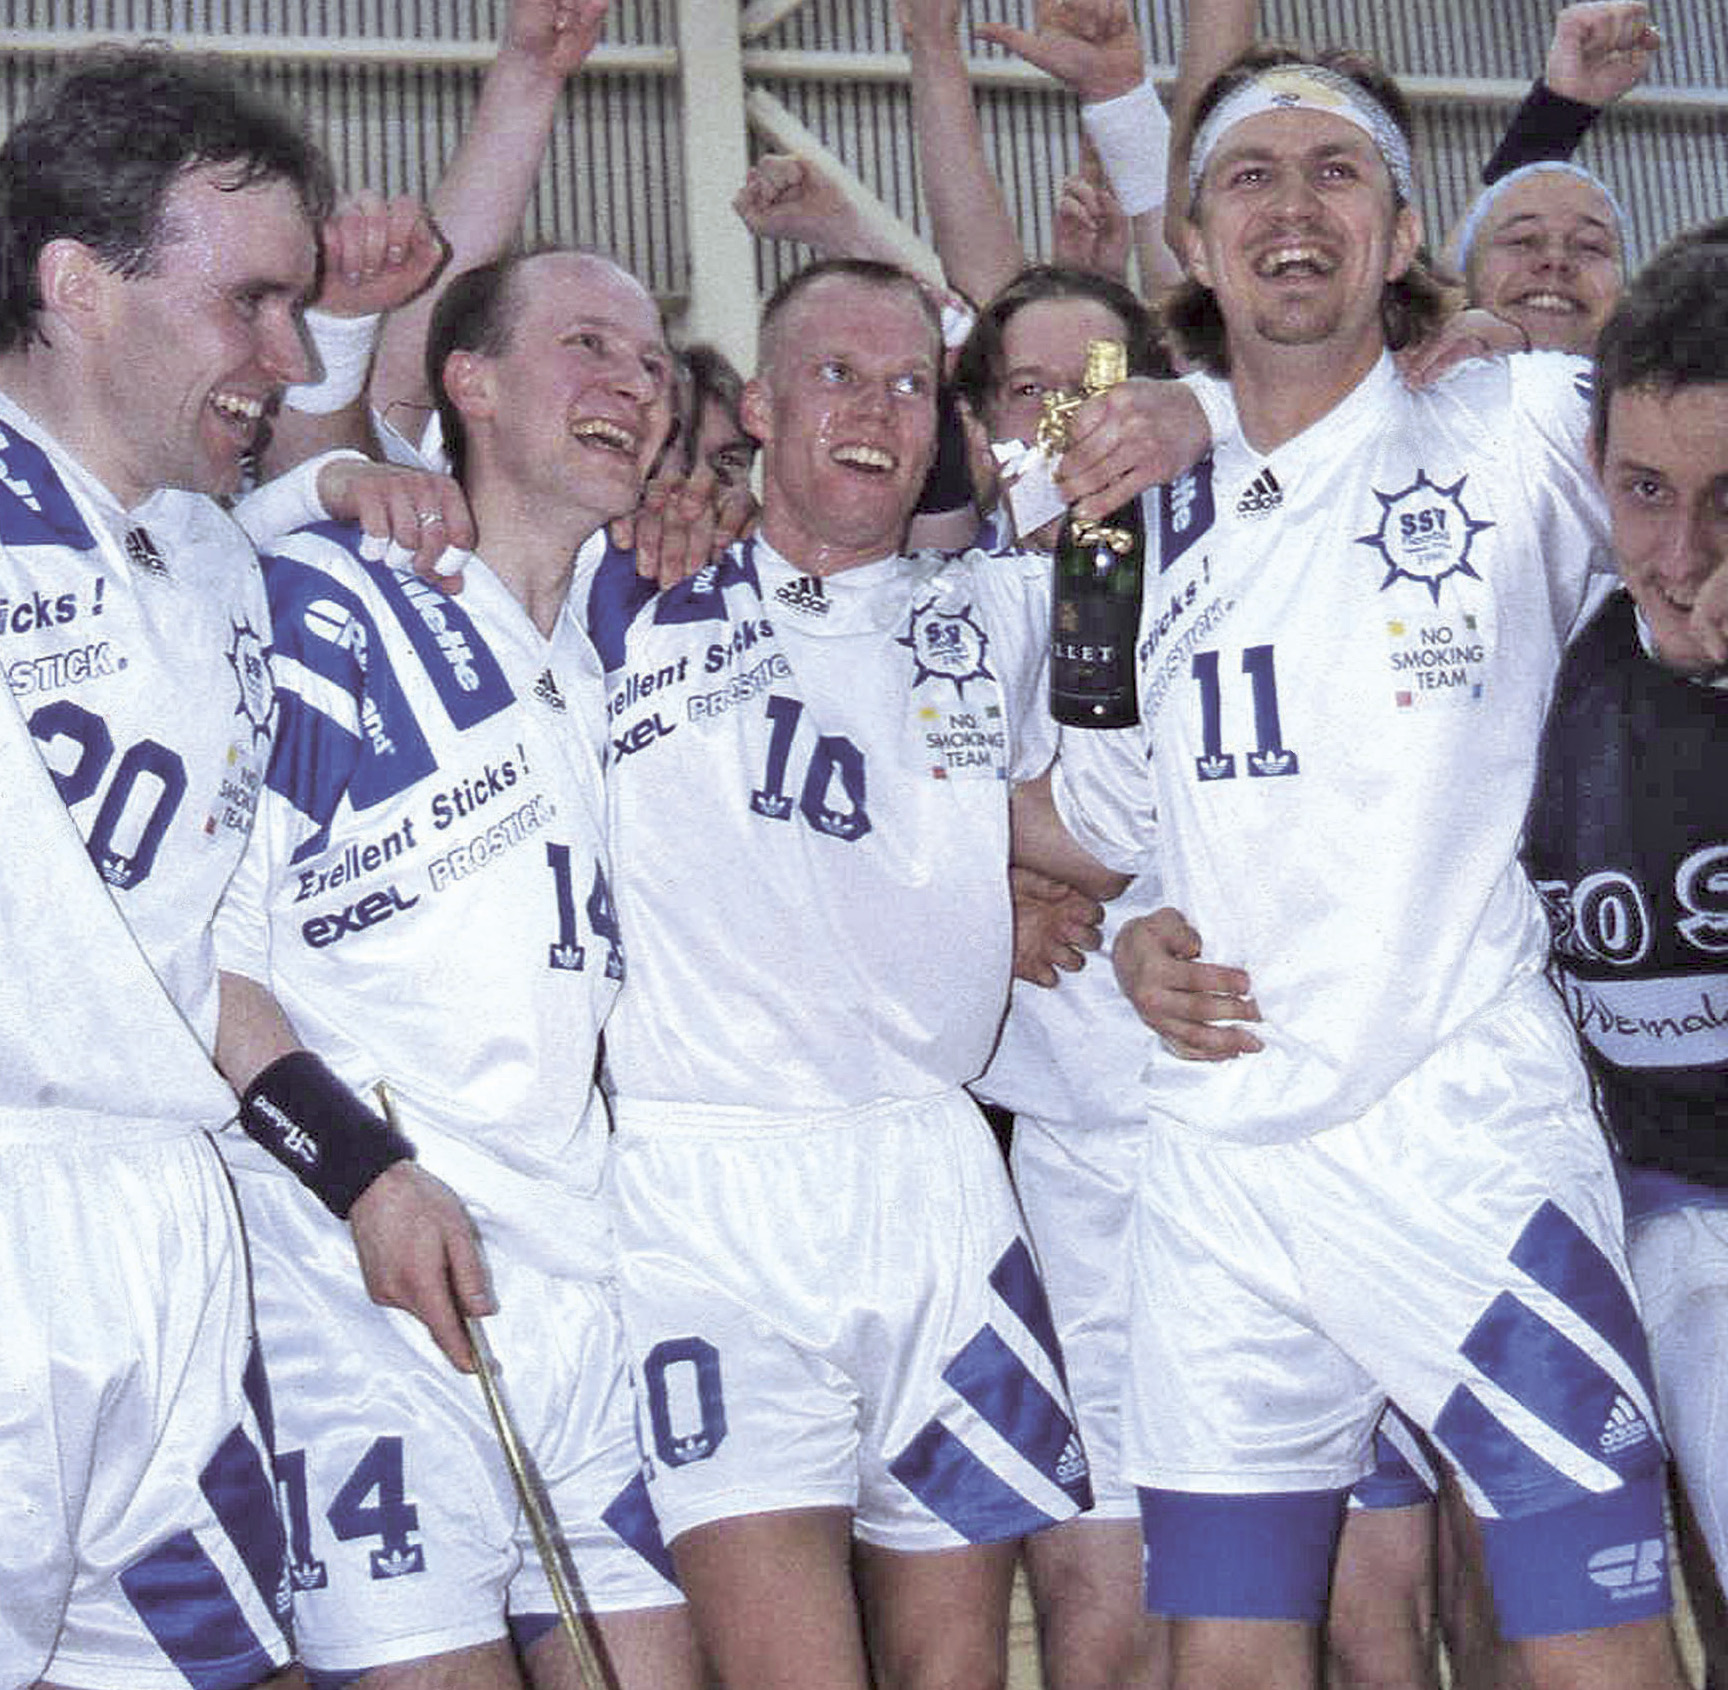 SSV voitti Suomen Mestaruuden kaksi kertaa peräkkäin kausilla 94-95 ja 95-96. Happeen helposti jatkosta. Välierissä SSV:n kovuuden sai kokea rakas vihollinen Vuosaaren Viikingit.